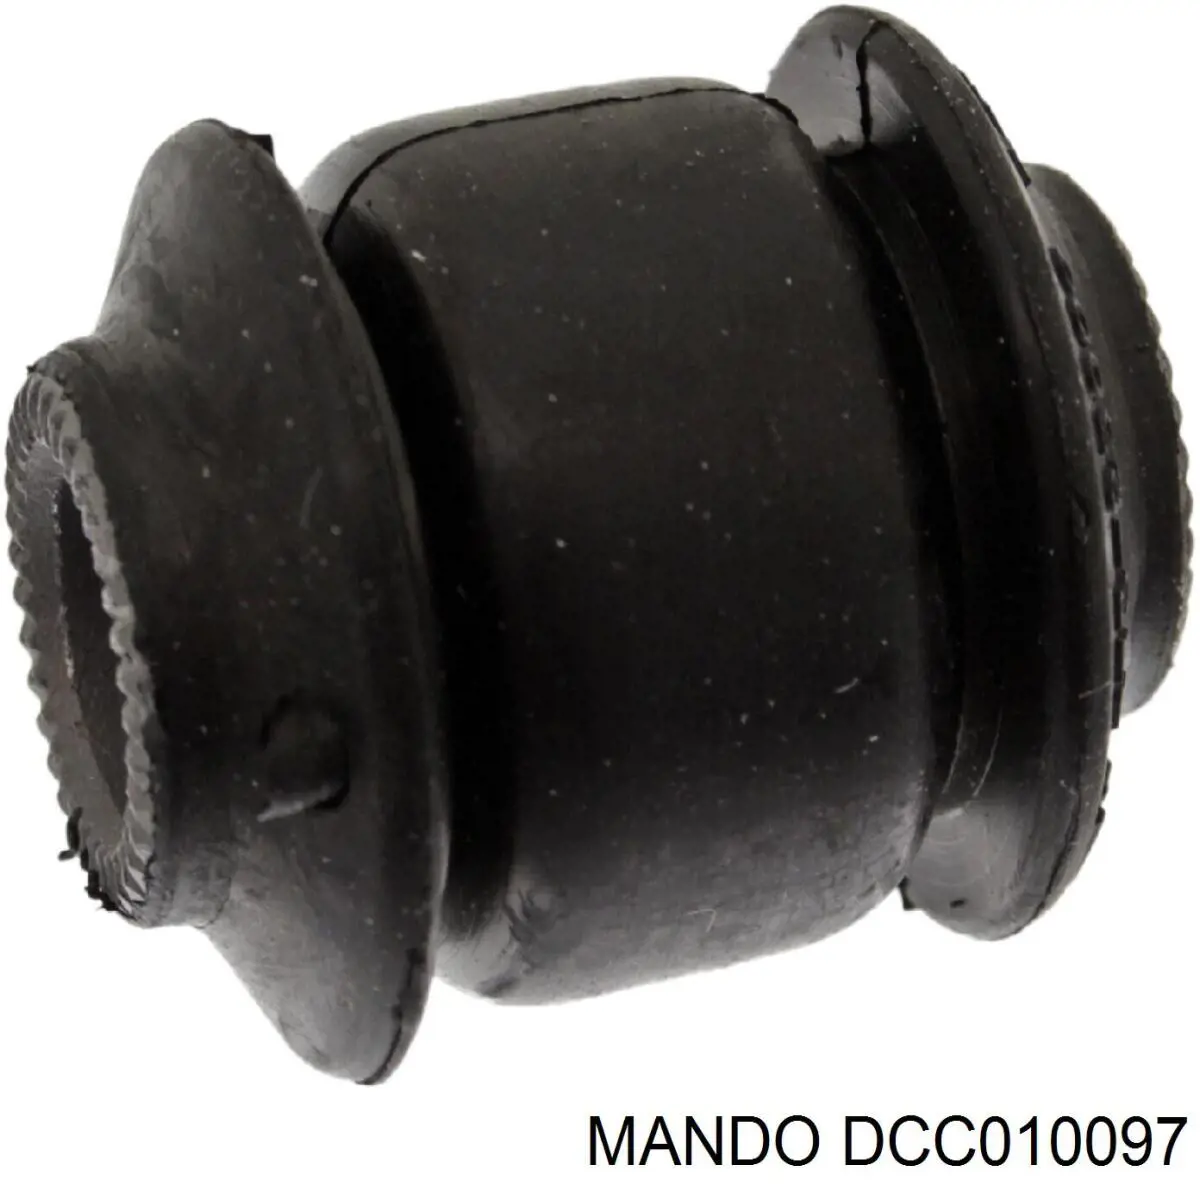 DCC010097 Mando сайлентблок заднего поперечного рычага